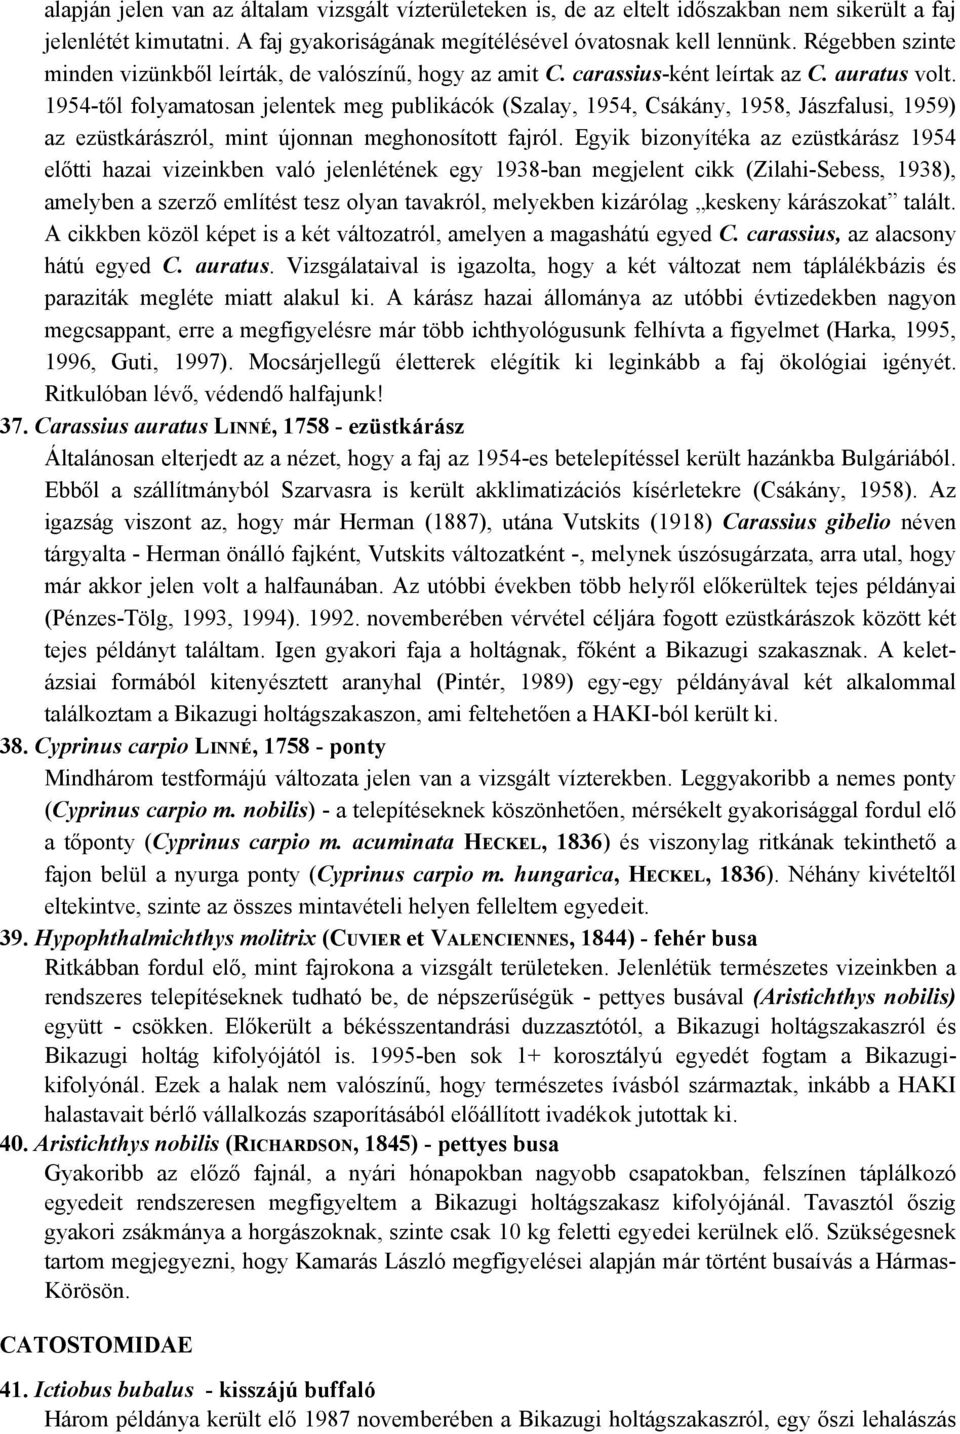 1954-től folyamatosan jelentek meg publikácók (Szalay, 1954, Csákány, 1958, Jászfalusi, 1959) az ezüstkárászról, mint újonnan meghonosított fajról.